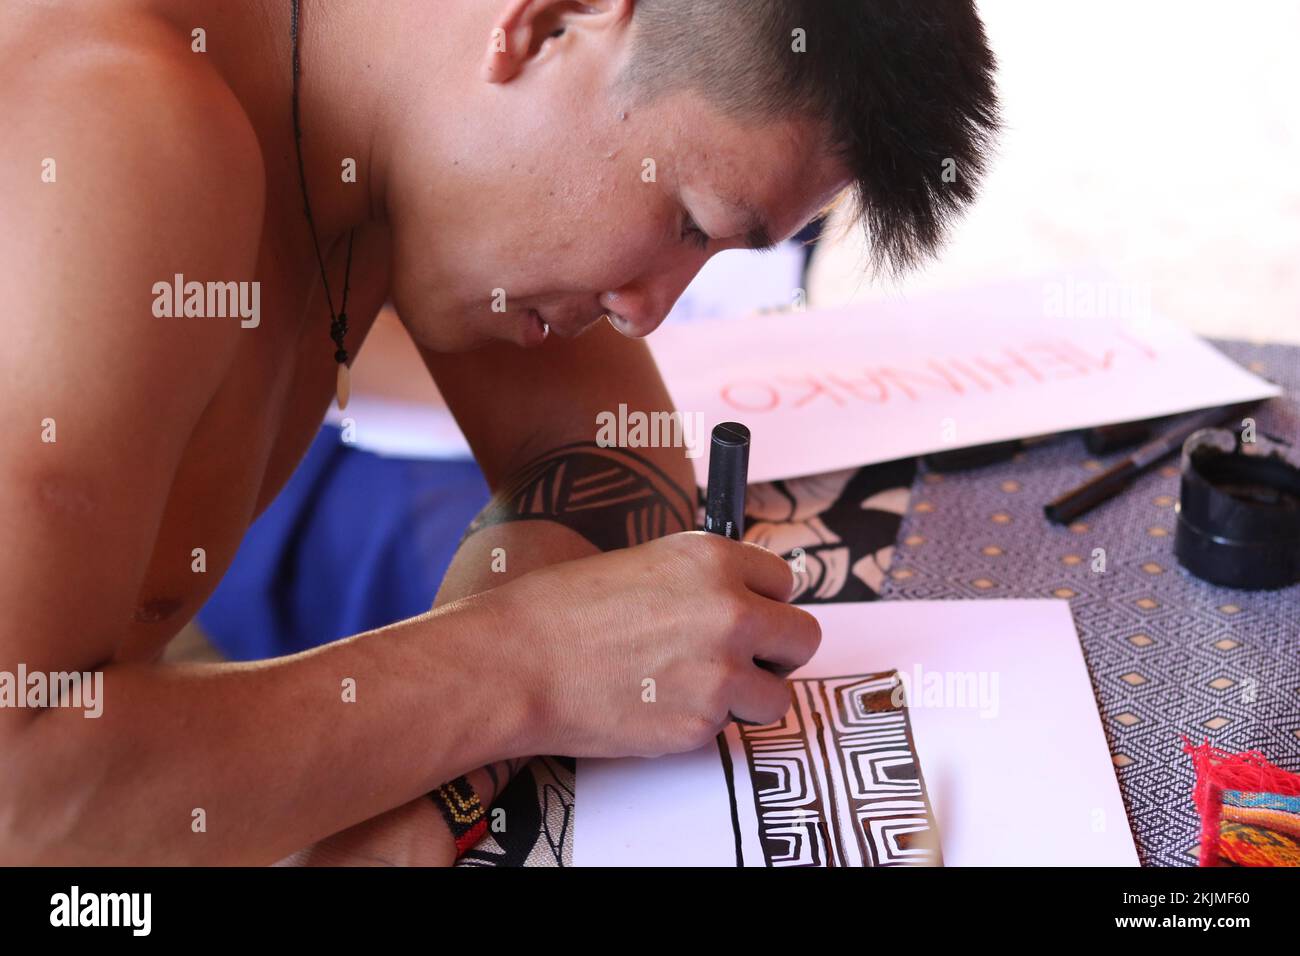 Peuples autochtones, homme du peuple autochtone Mehinako (Xingu) faisant de l'art graphique traditionnel, Pernambuco, Brésil, Amérique du Sud Banque D'Images